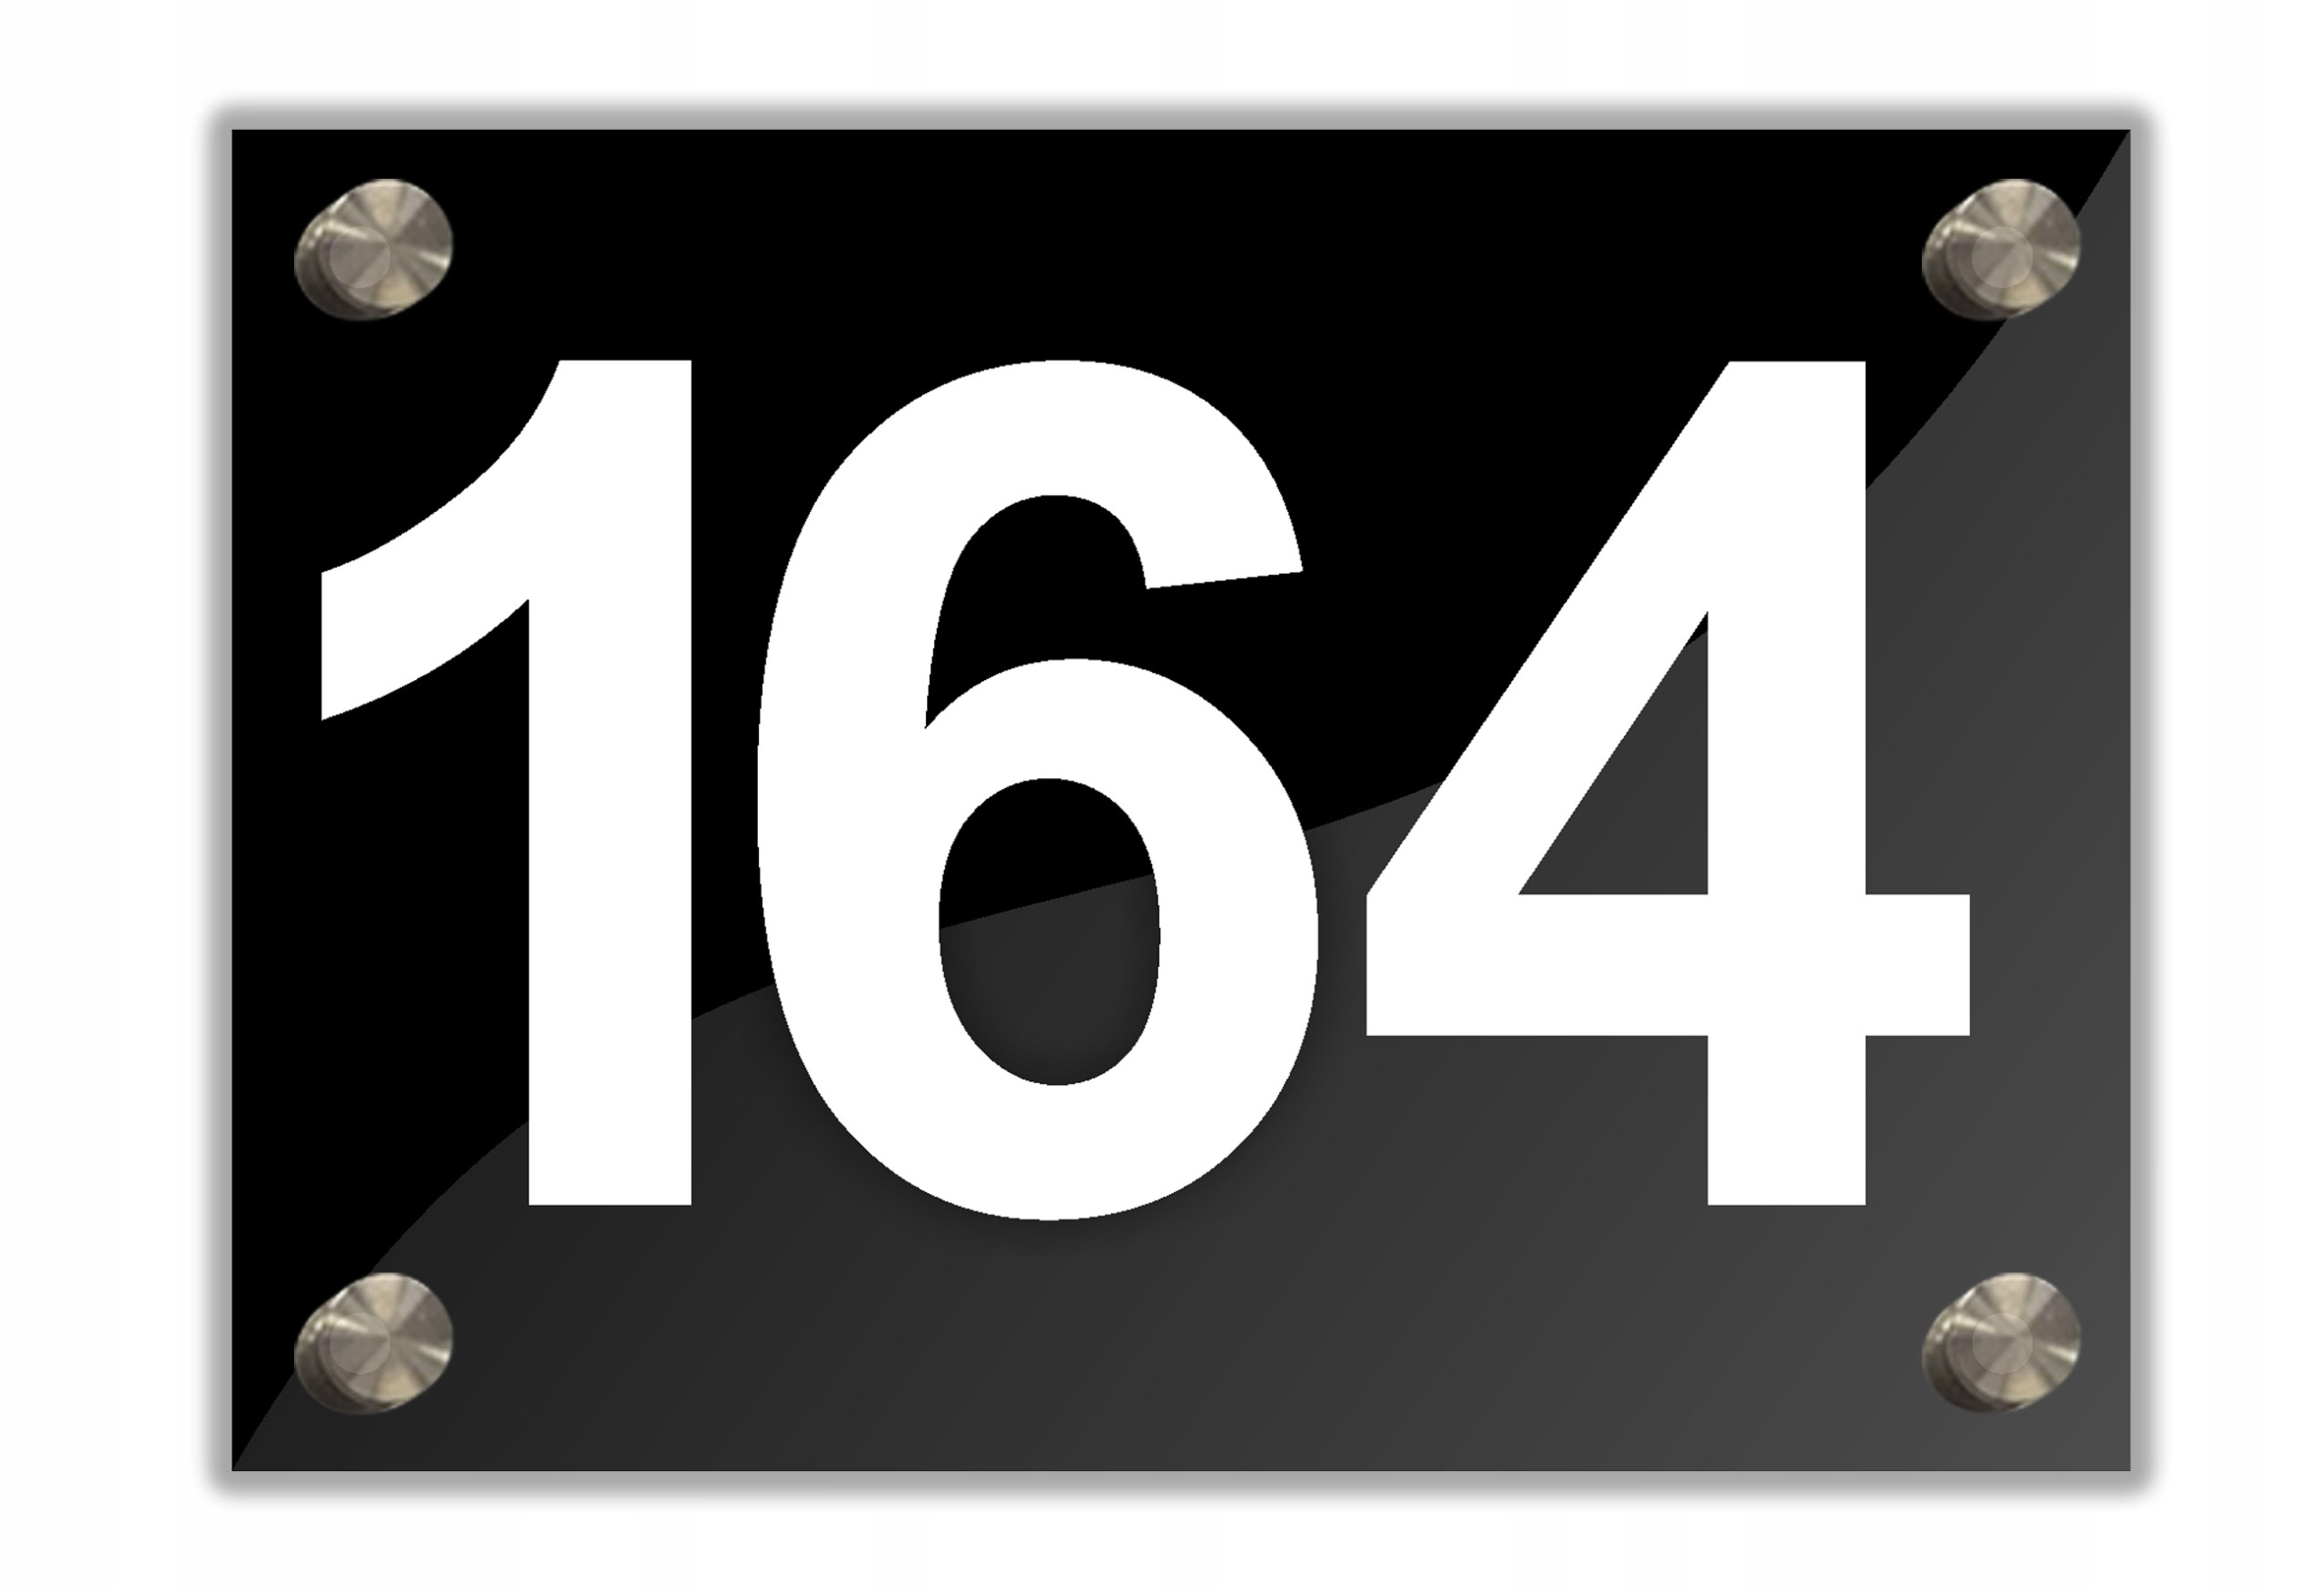 Плотная номер 1. Цифра 13 на адресной табличке.